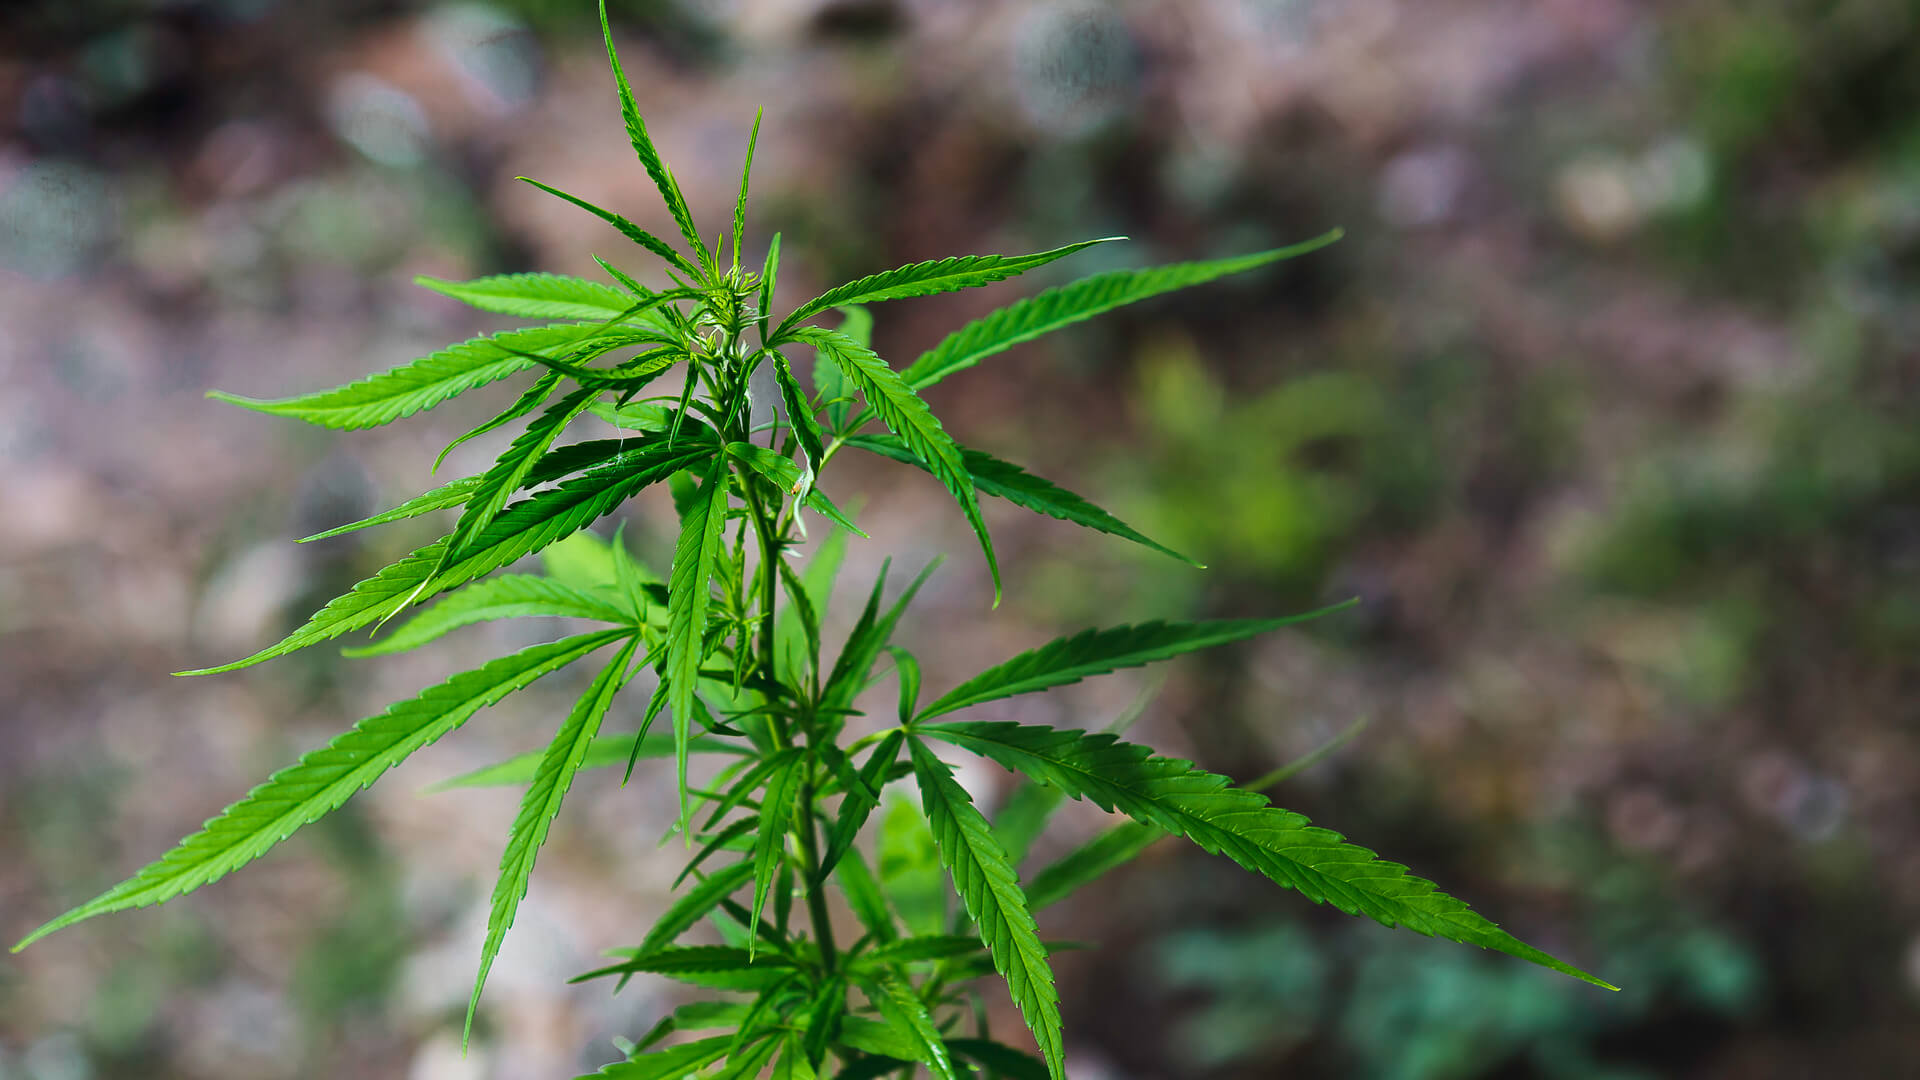 A closeup of a Cannabis ruderalis plant